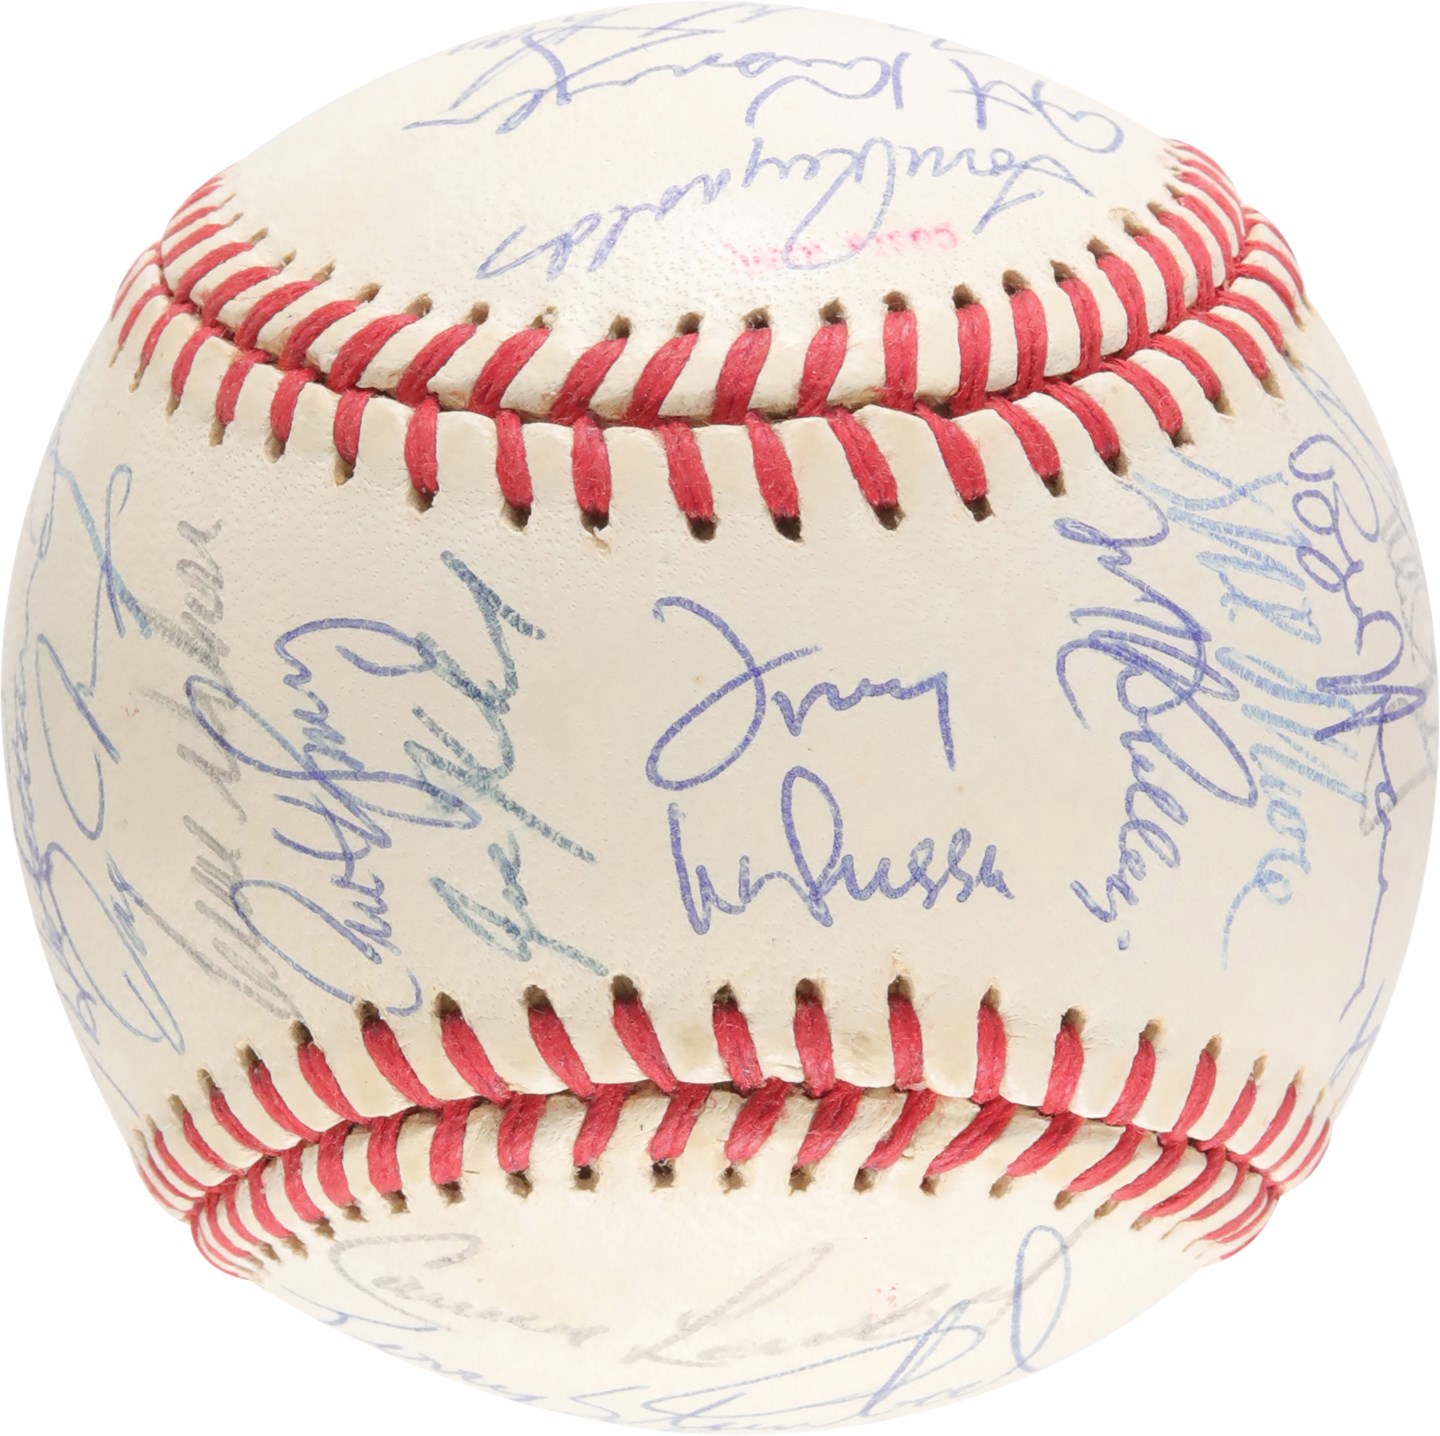 Baseball Autographs - High-Grade 1990 Oakland A's World Series Team-Signed Baseball